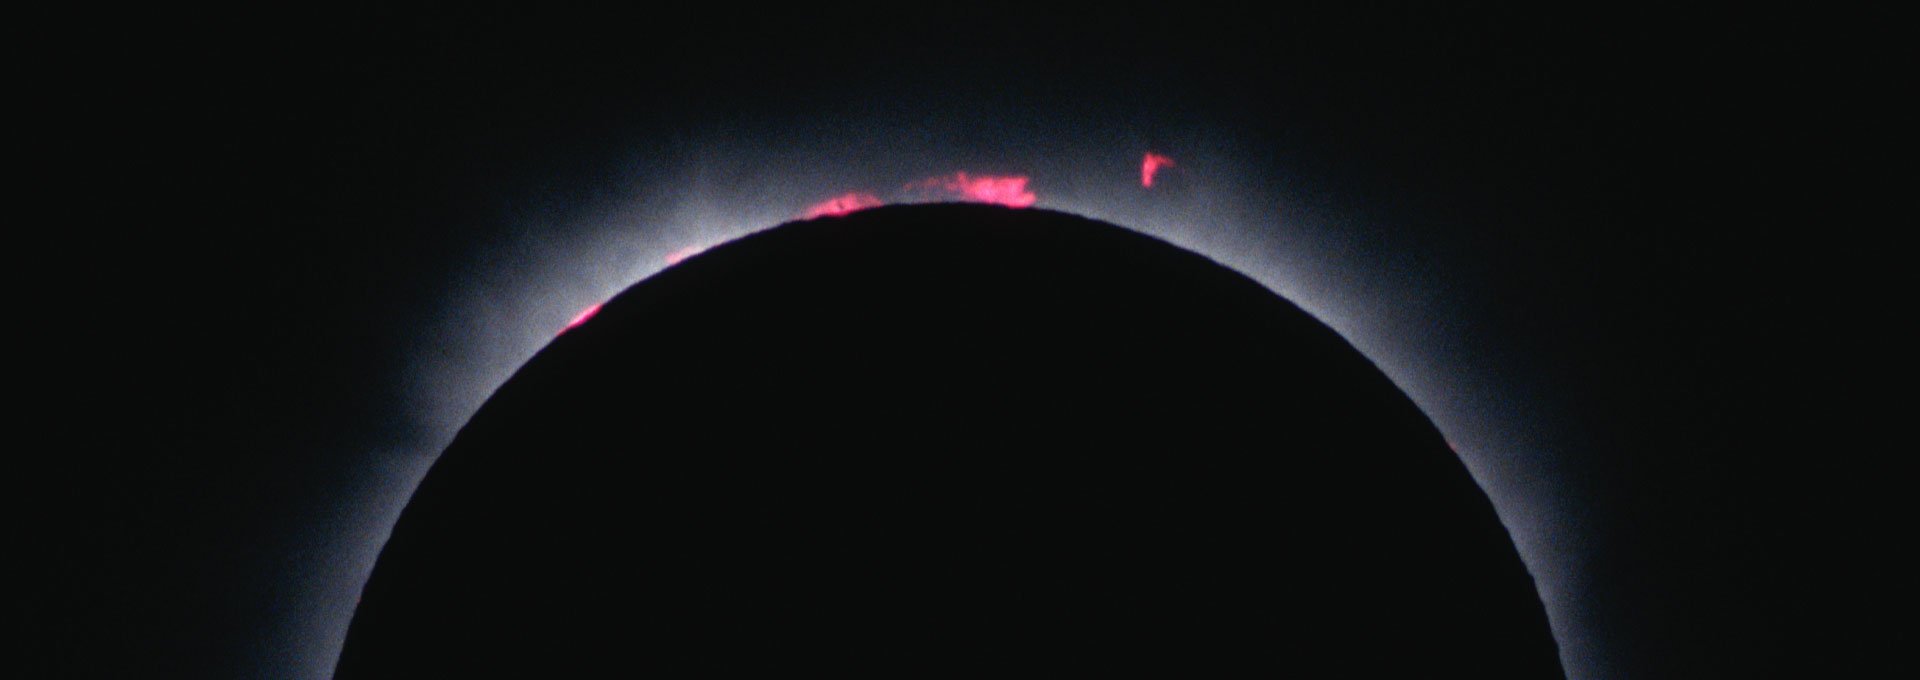 solar-eclipse-1999-header